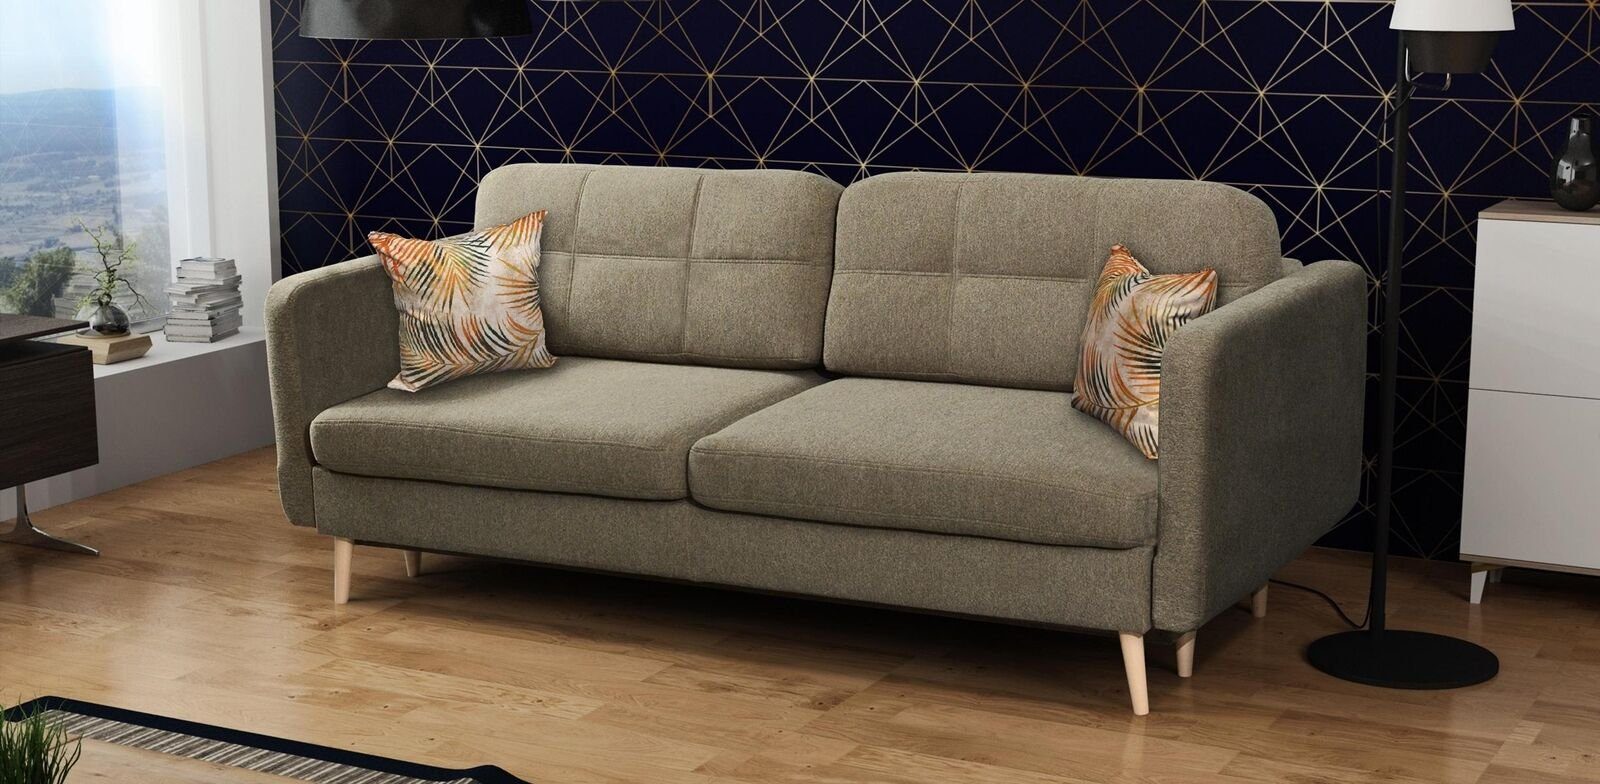 JVmoebel Sofa, Schlafsofa Luxus Designer Sofa 3 Sitzer Möbel Polster Textil Blaue Braun